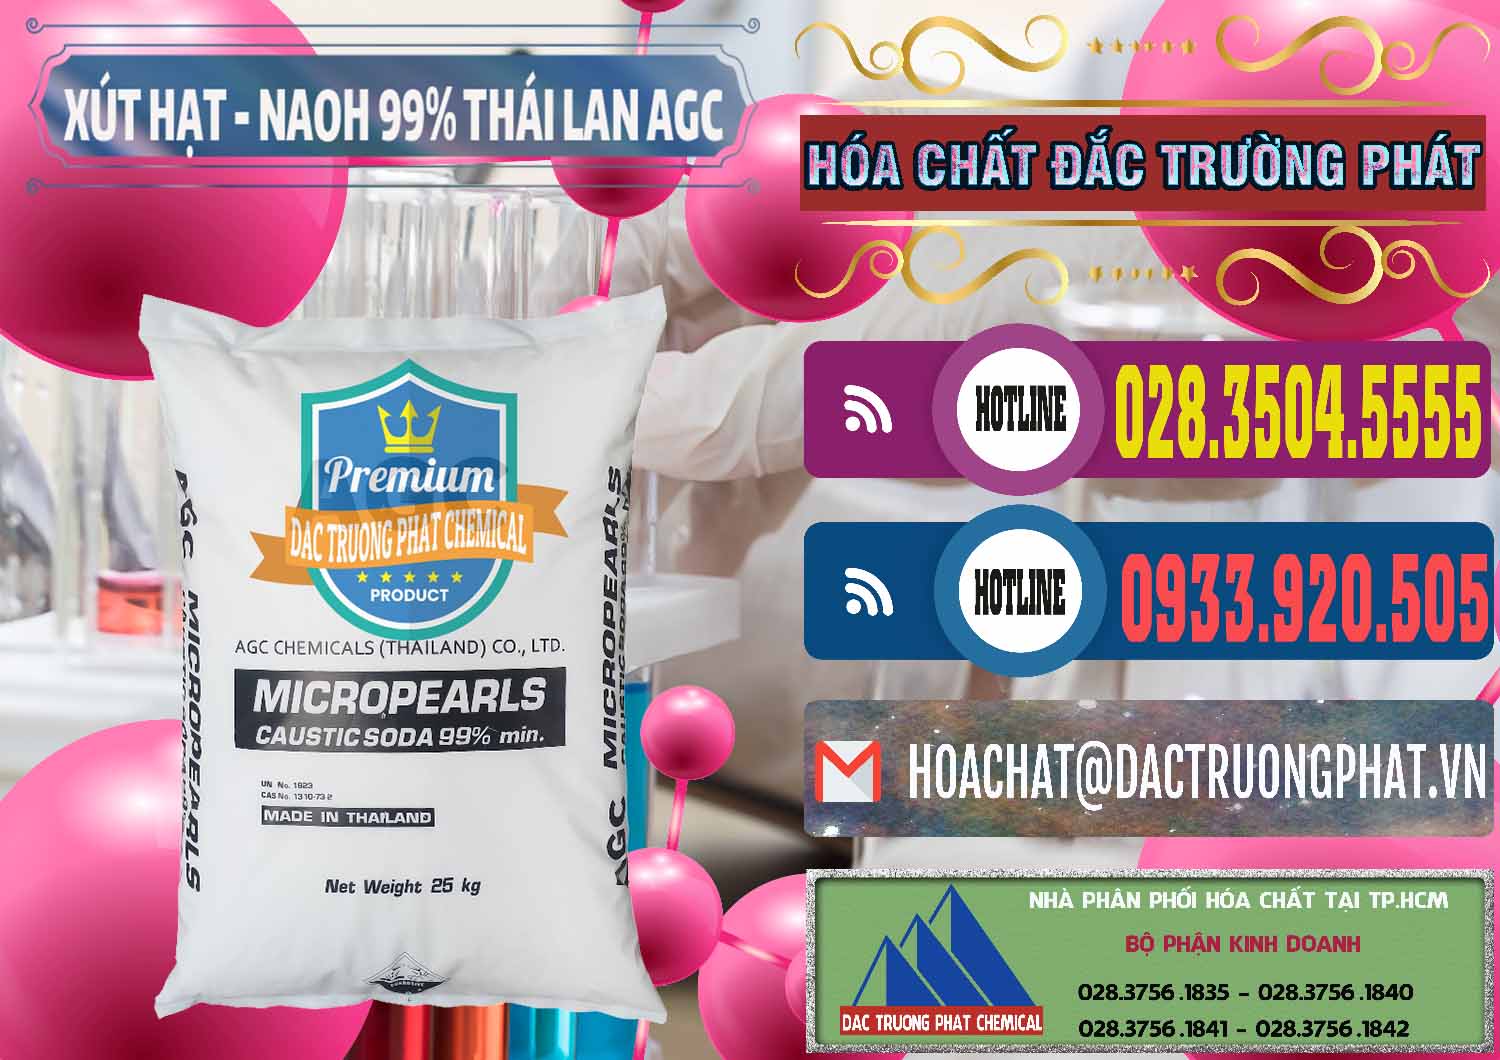 Cty nhập khẩu & bán Xút Hạt - NaOH Bột 99% AGC Thái Lan - 0168 - Công ty kinh doanh & cung cấp hóa chất tại TP.HCM - muabanhoachat.com.vn